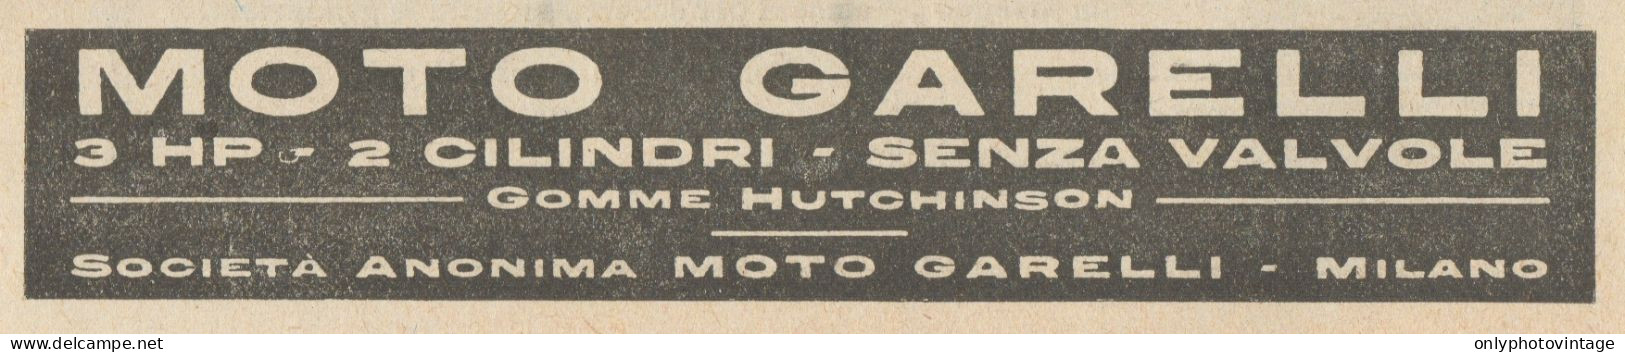 Moto GARELLI - Gomme Hutchinson - Pubblicità D'epoca - 1922 Old Advert - Pubblicitari